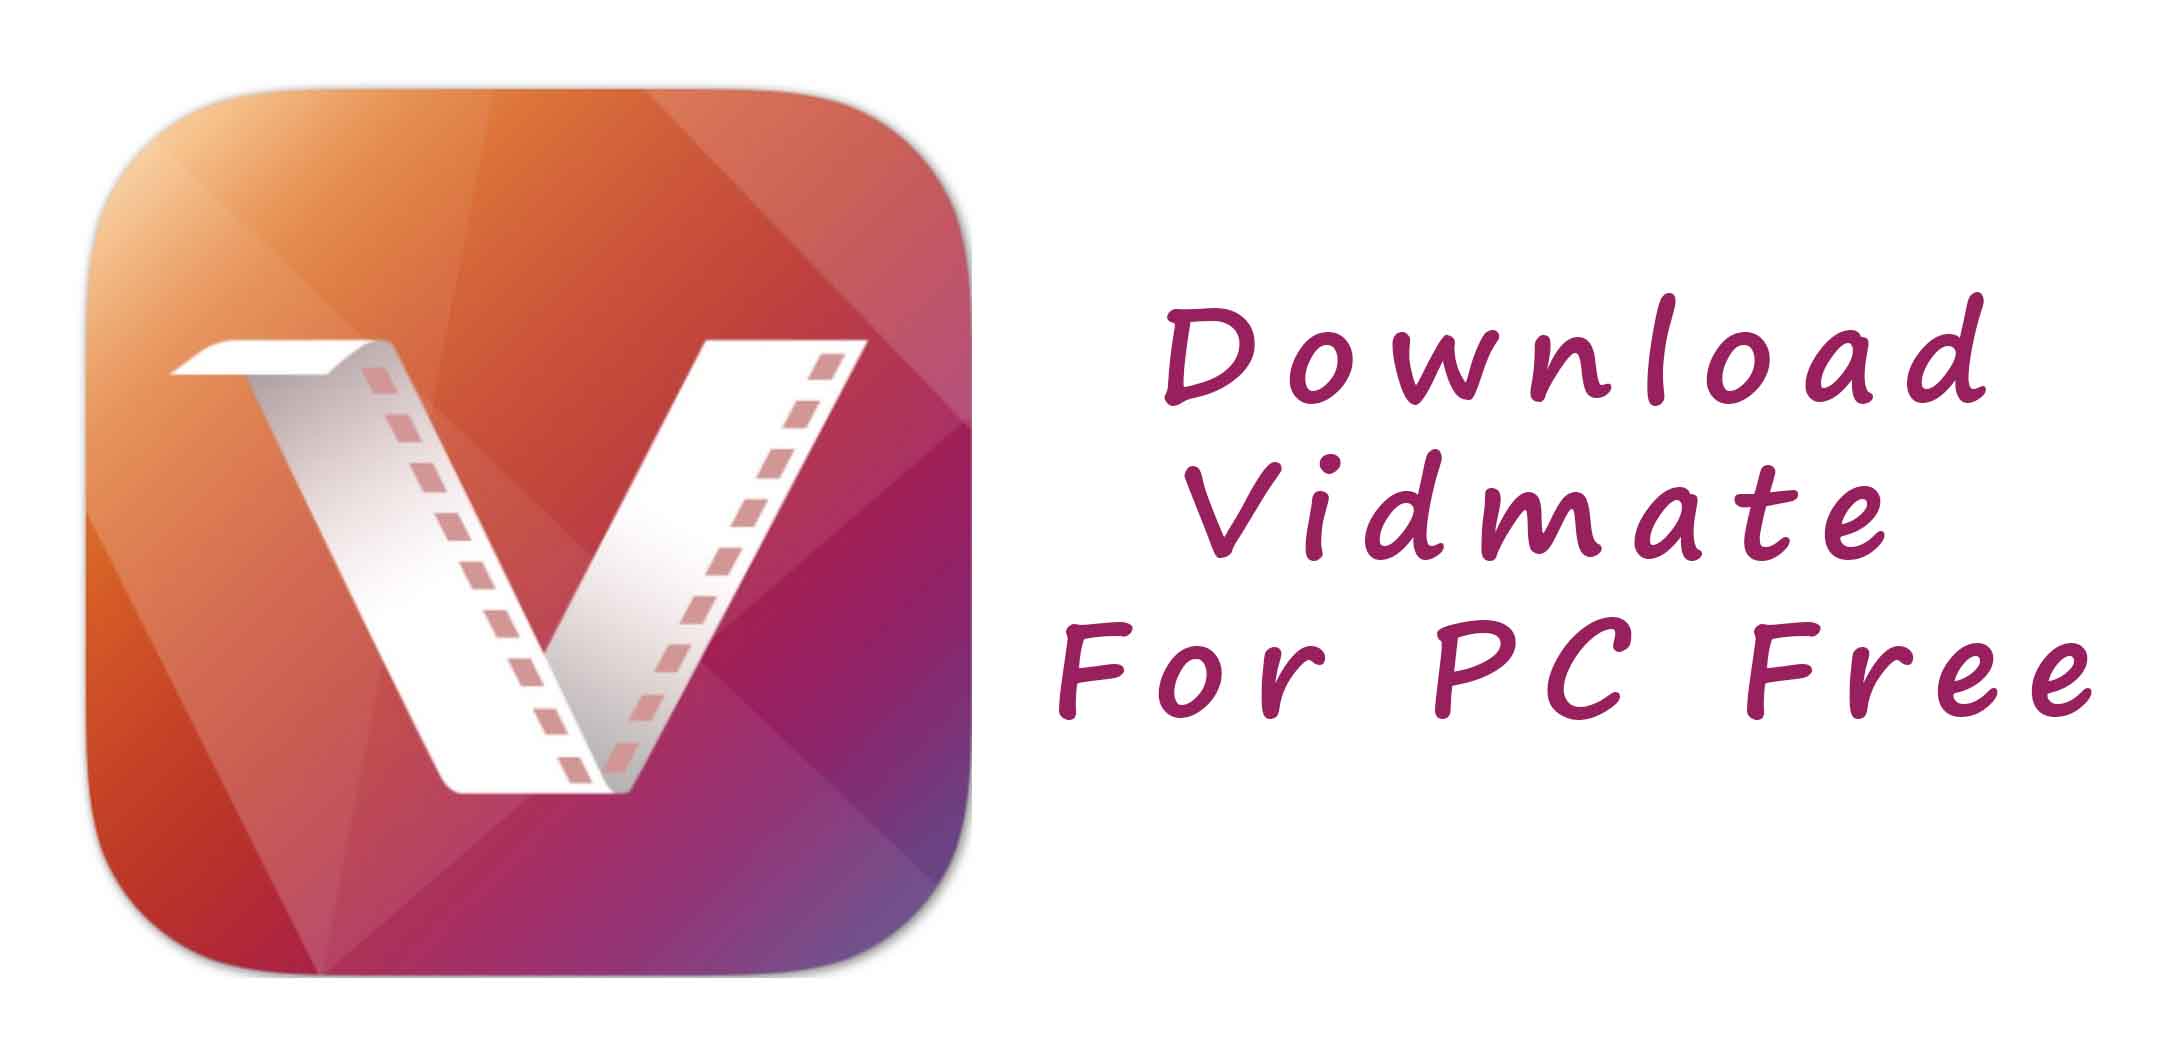 download vidmate apk